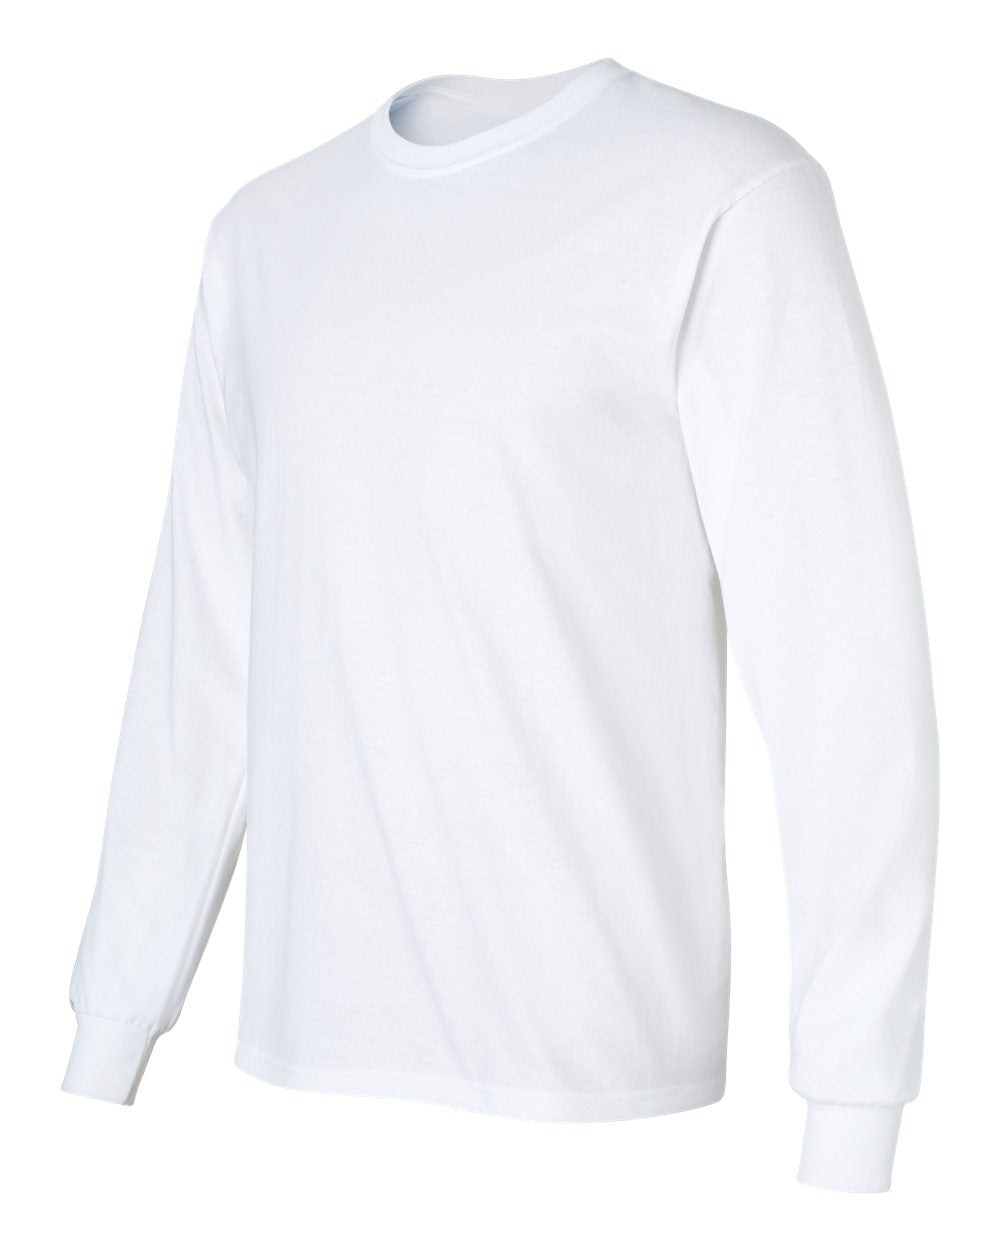 Gildan - Ultra Cotton® Long Sleeve T-Shirt - 2400- S - 5XL